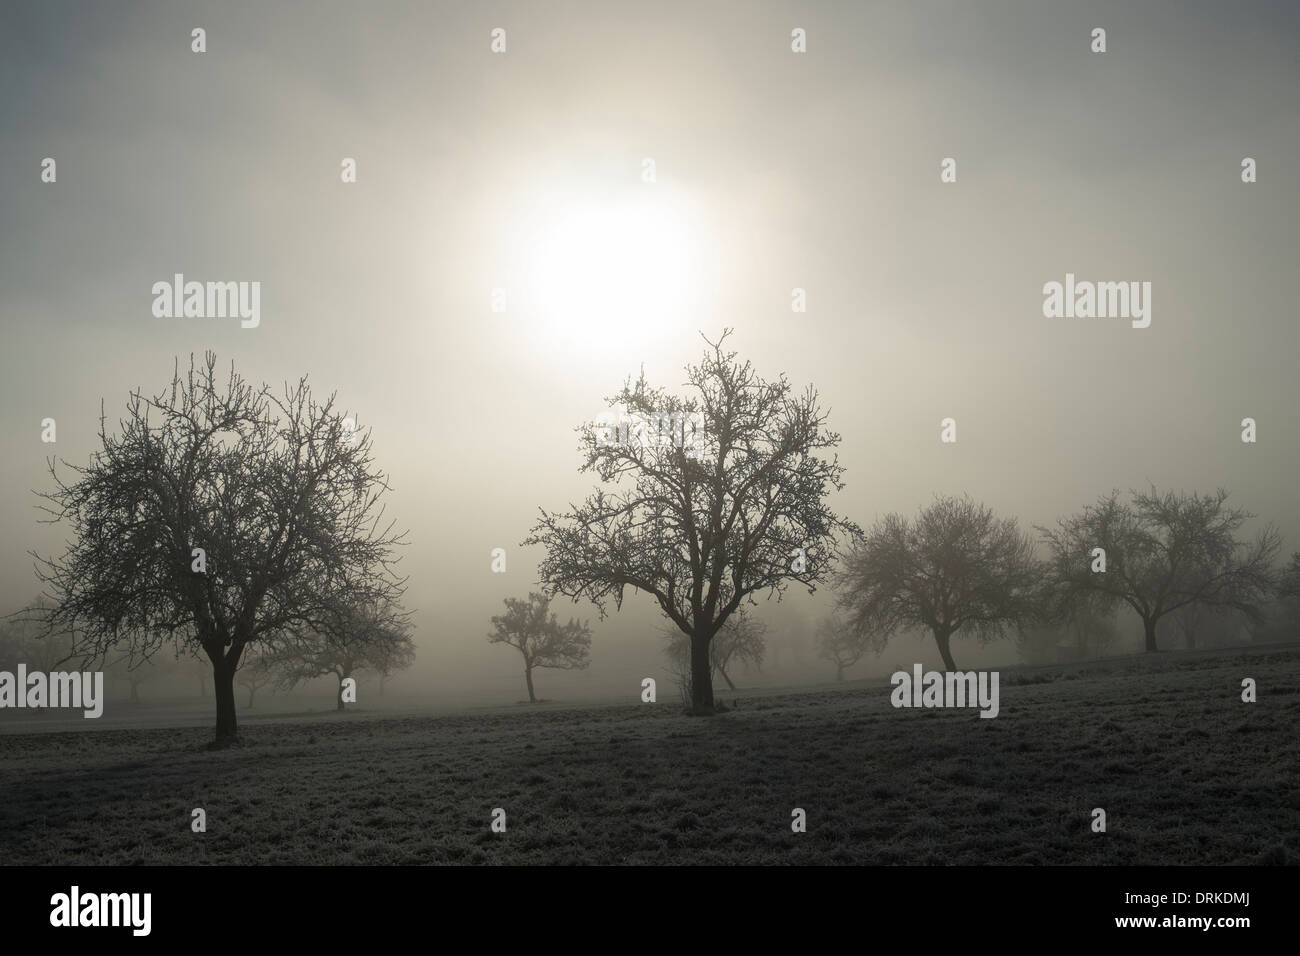 Deutschland, Baden-Württemberg, Tuttlingen Bezirk, Wiese mit vereinzelten Obstbäume und Nebelschwaden Stockfoto